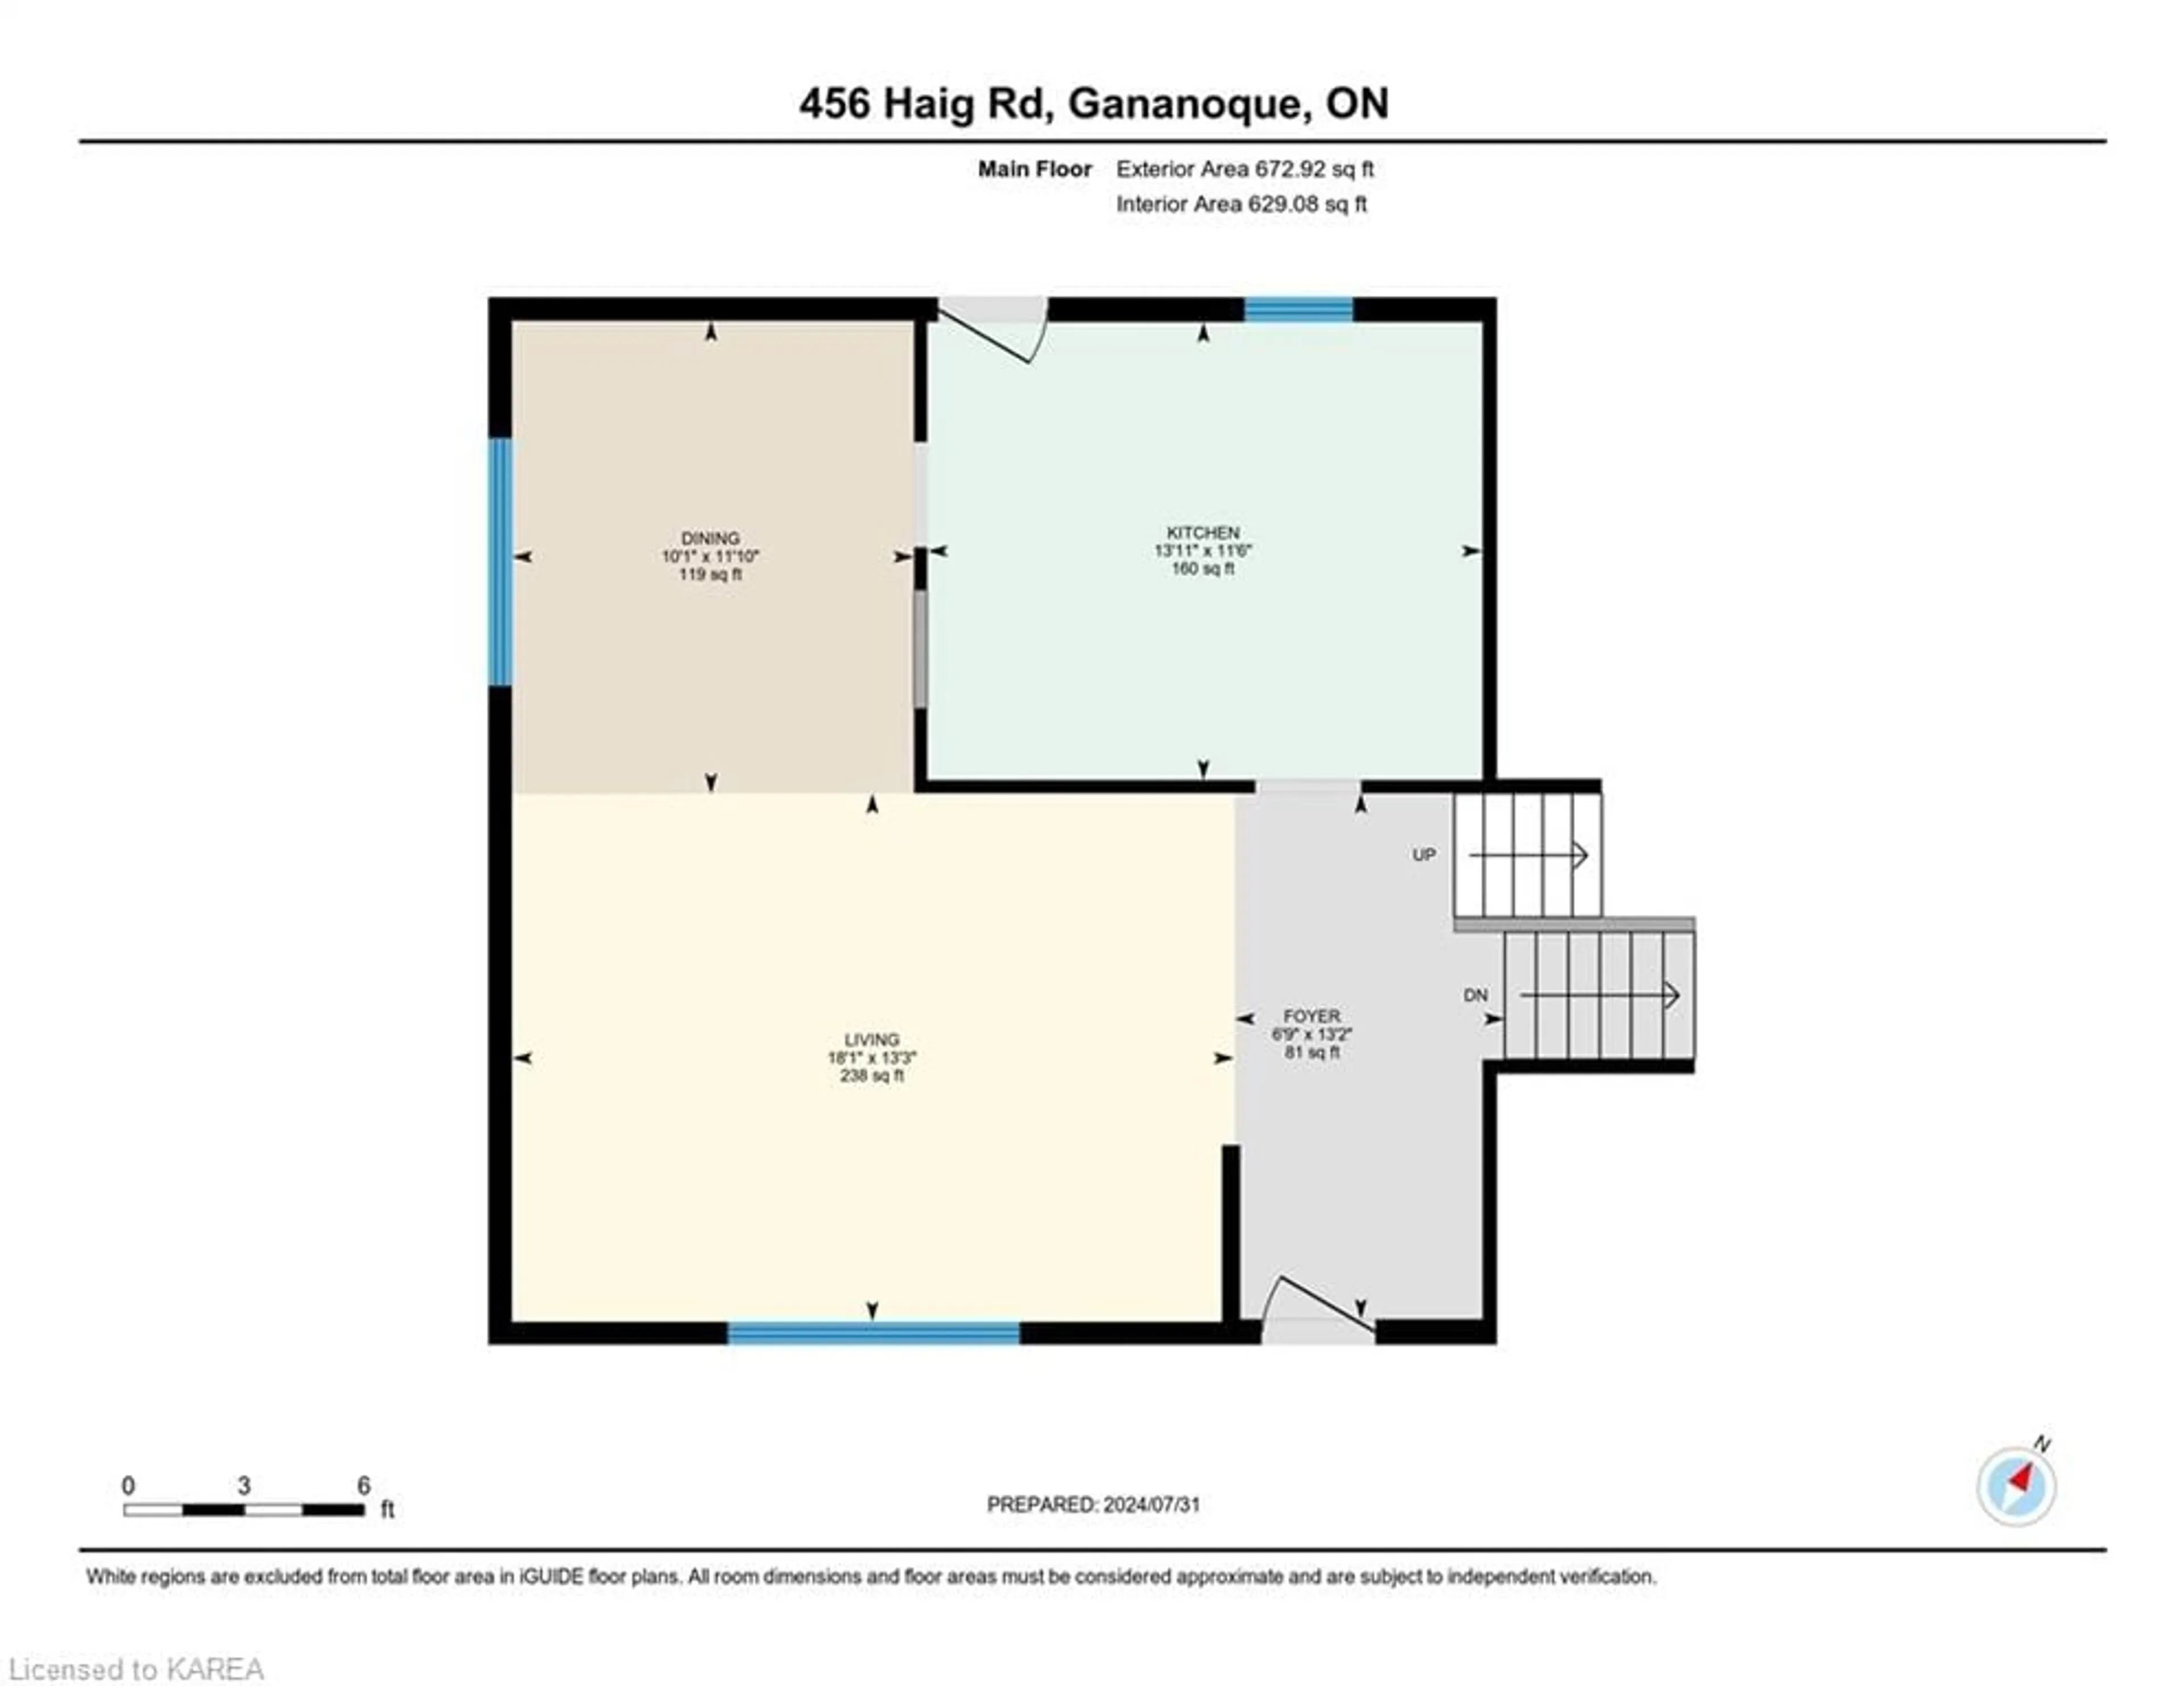 Floor plan for 456 Haig Rd, Leeds Ontario K7G 2V4